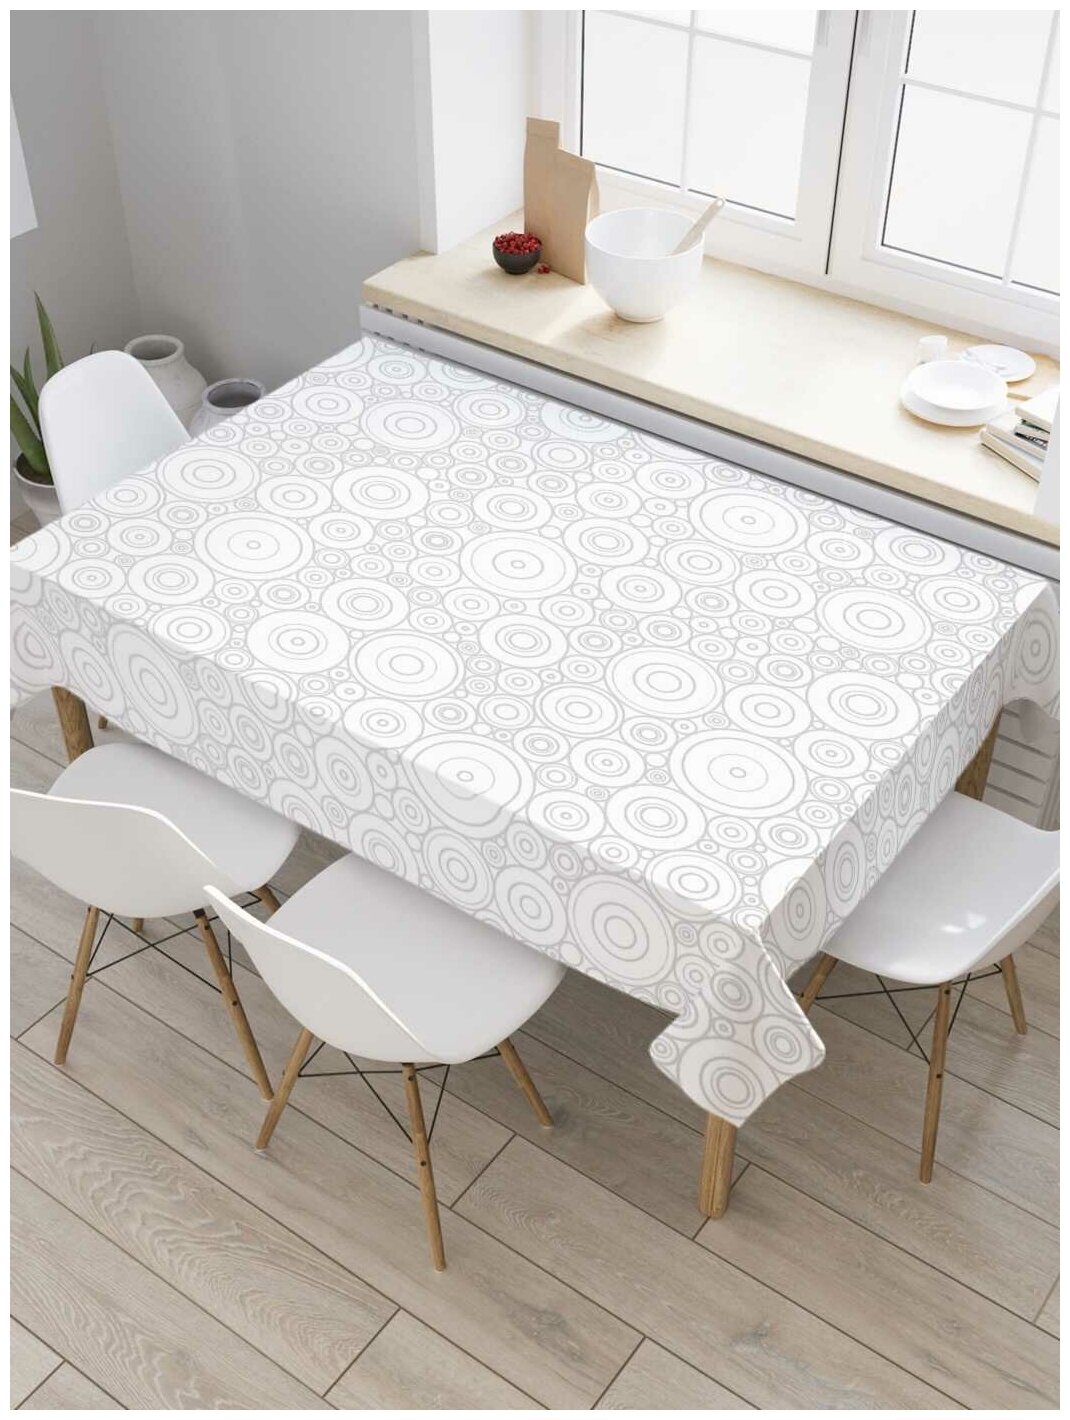 Прямоугольная водоотталкивающая тканевая скатерть на стол JoyArty с рисунком "Узоры с кругами" 145 на 180 смсерый, белый